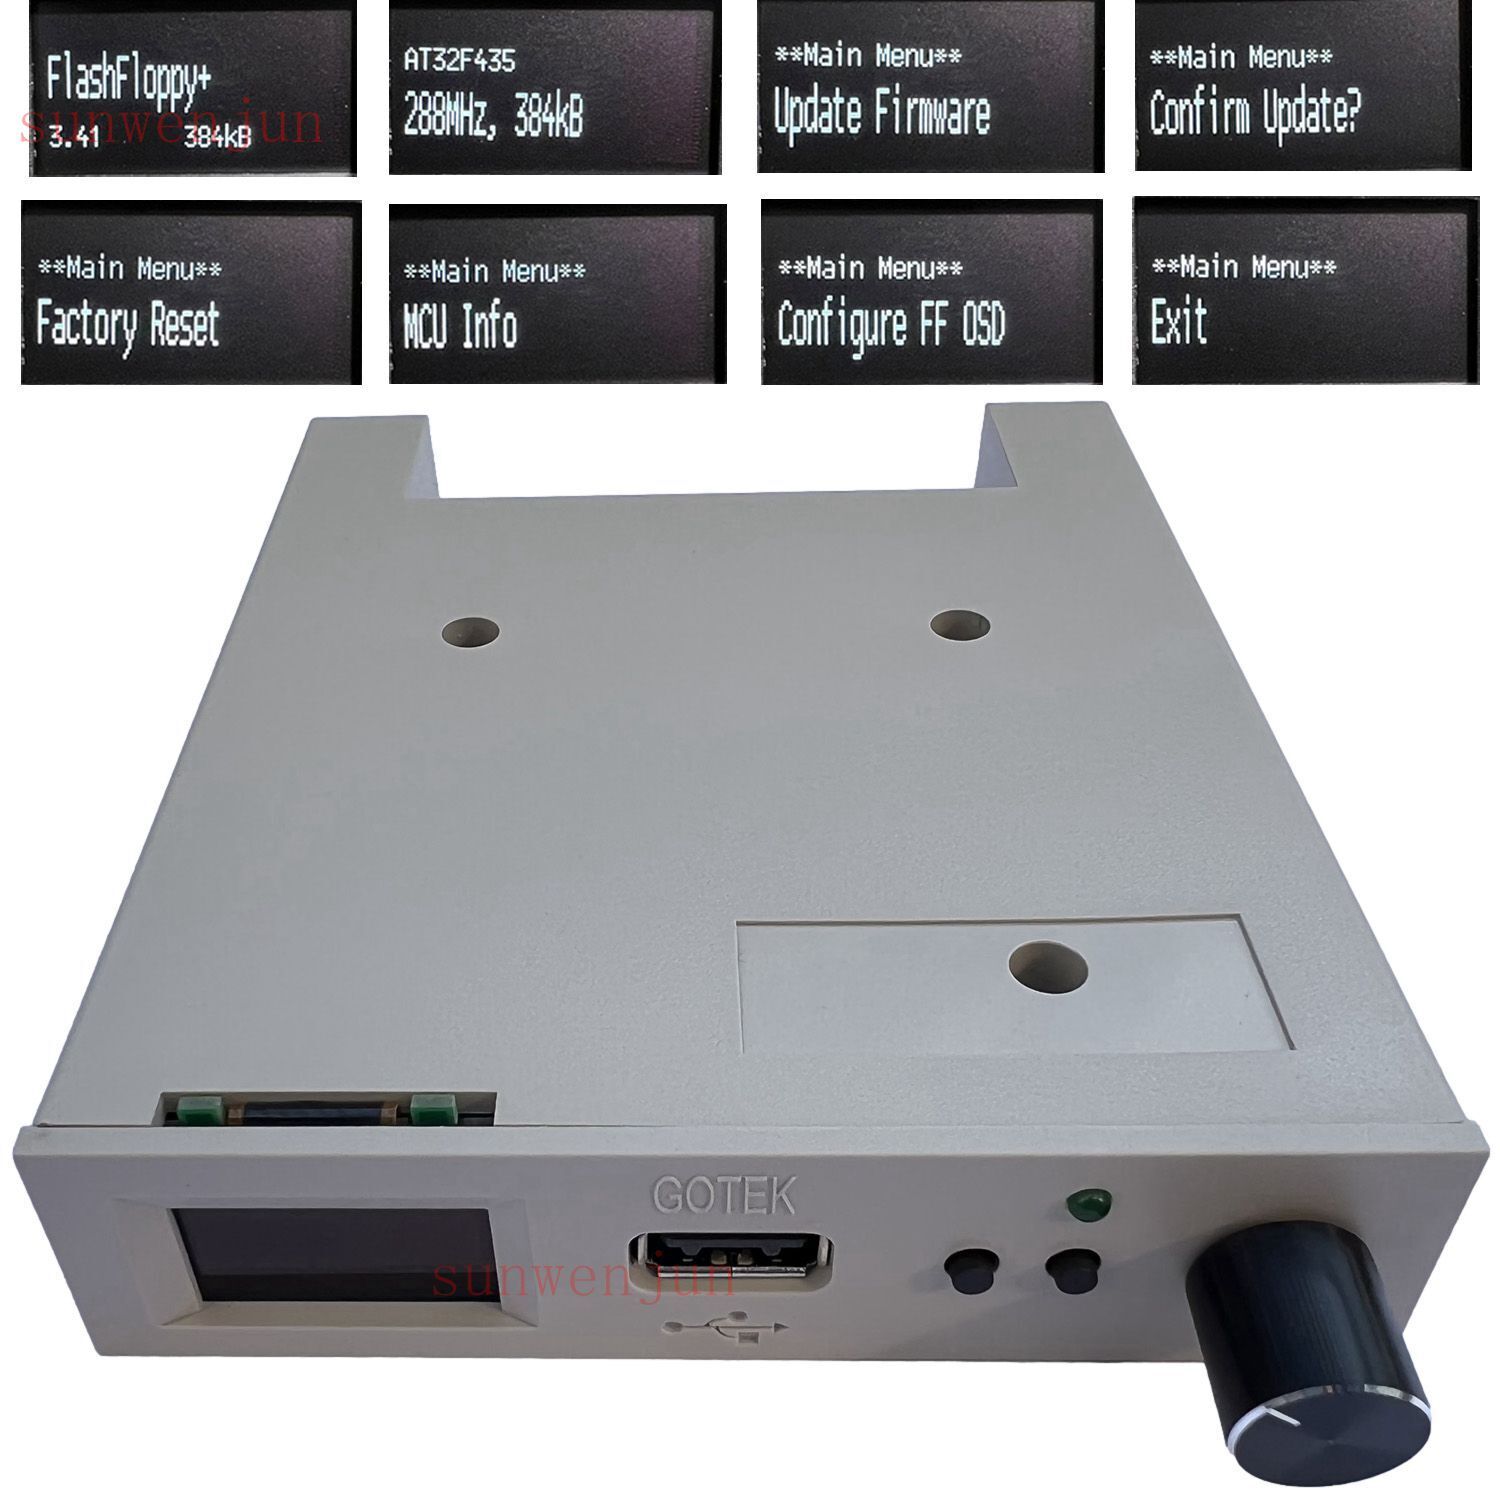 FlashFloppy V3.41 GOTEK Floppy emulator AT32F435 SFR1M44 -U100 LQD beige grey US